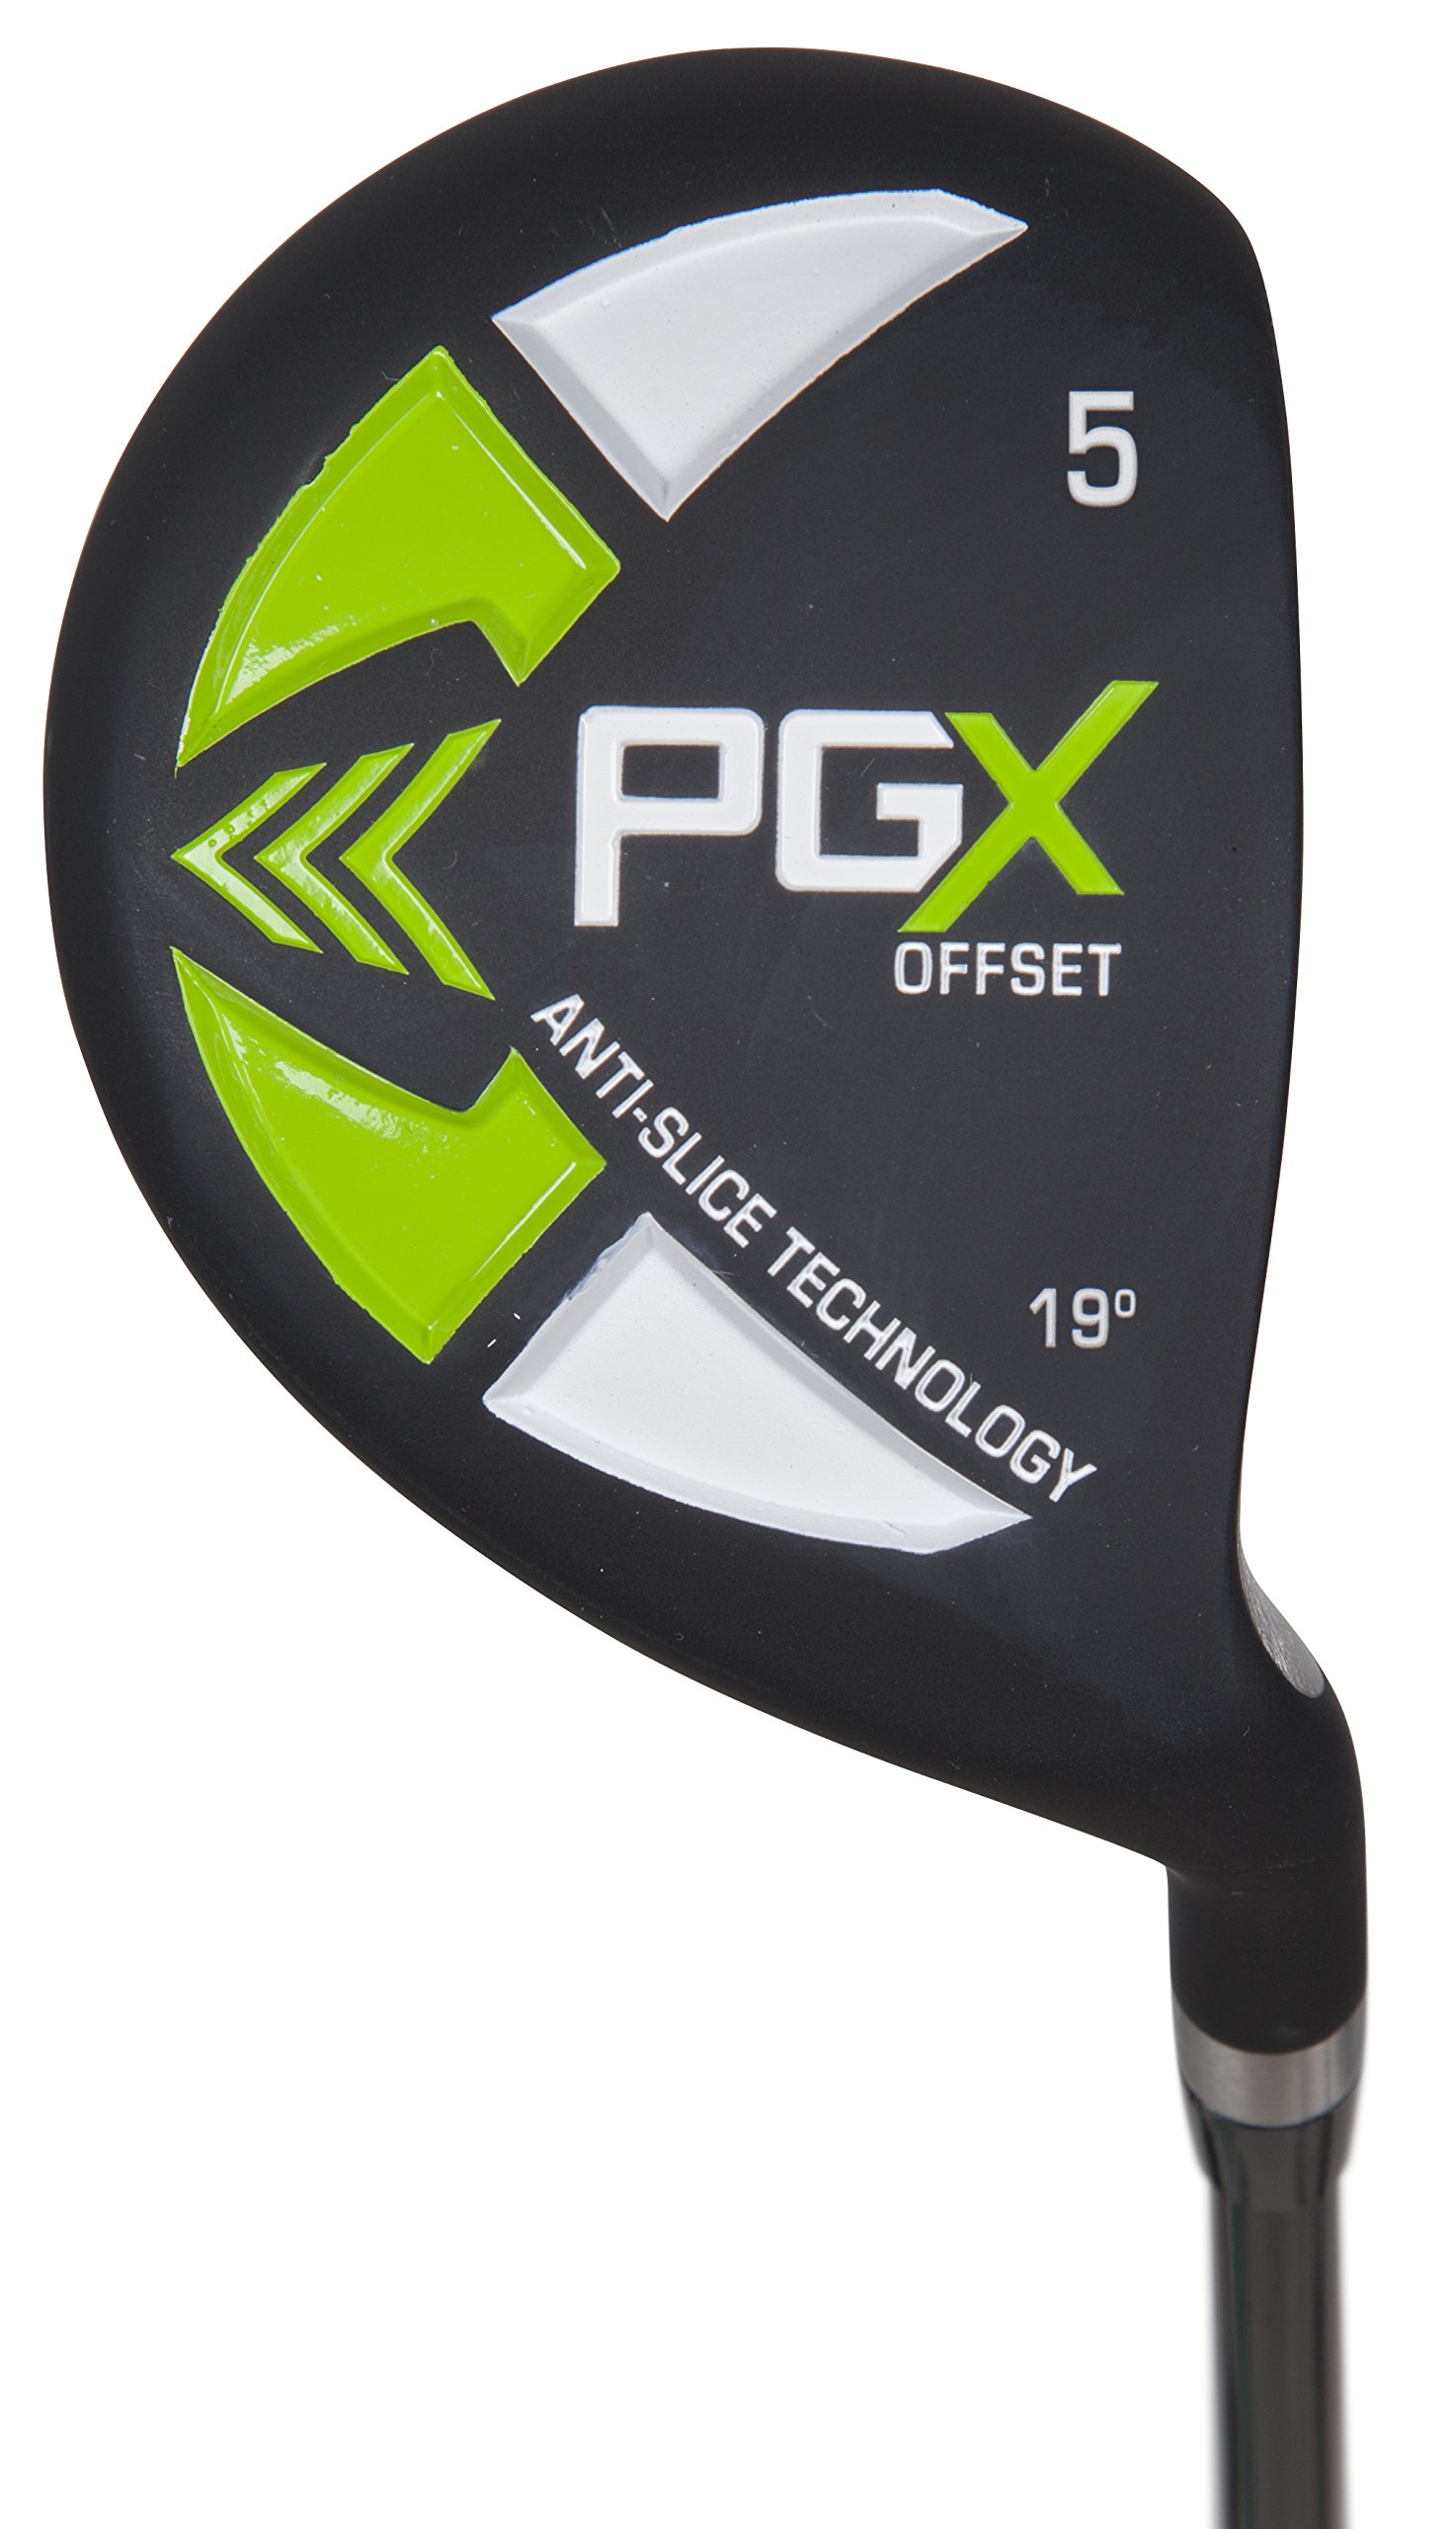 Pinemeadow PGX Offset Golf Fairway Woods